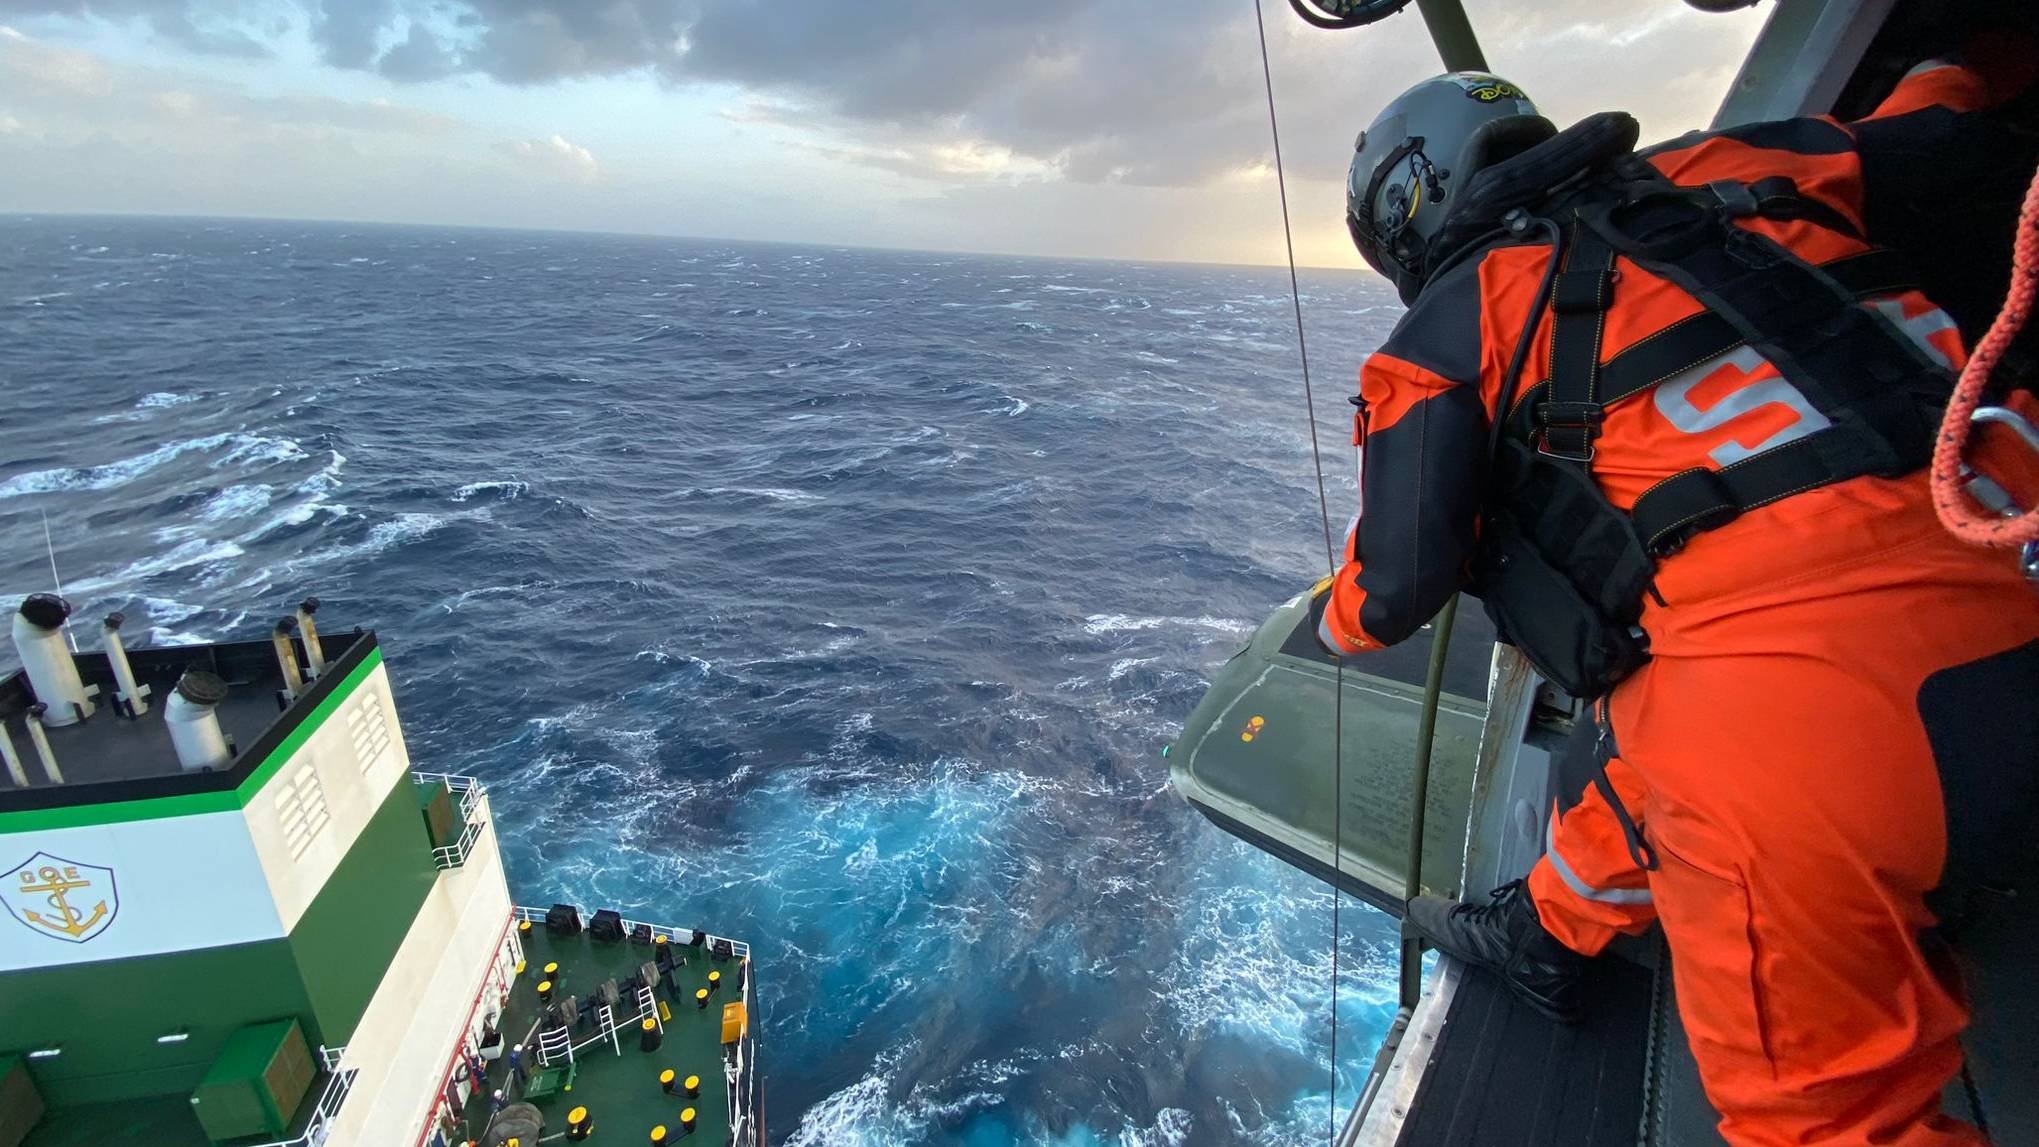 Fora Area: Esquadra 752 - “Fnix” resgata doente em navio